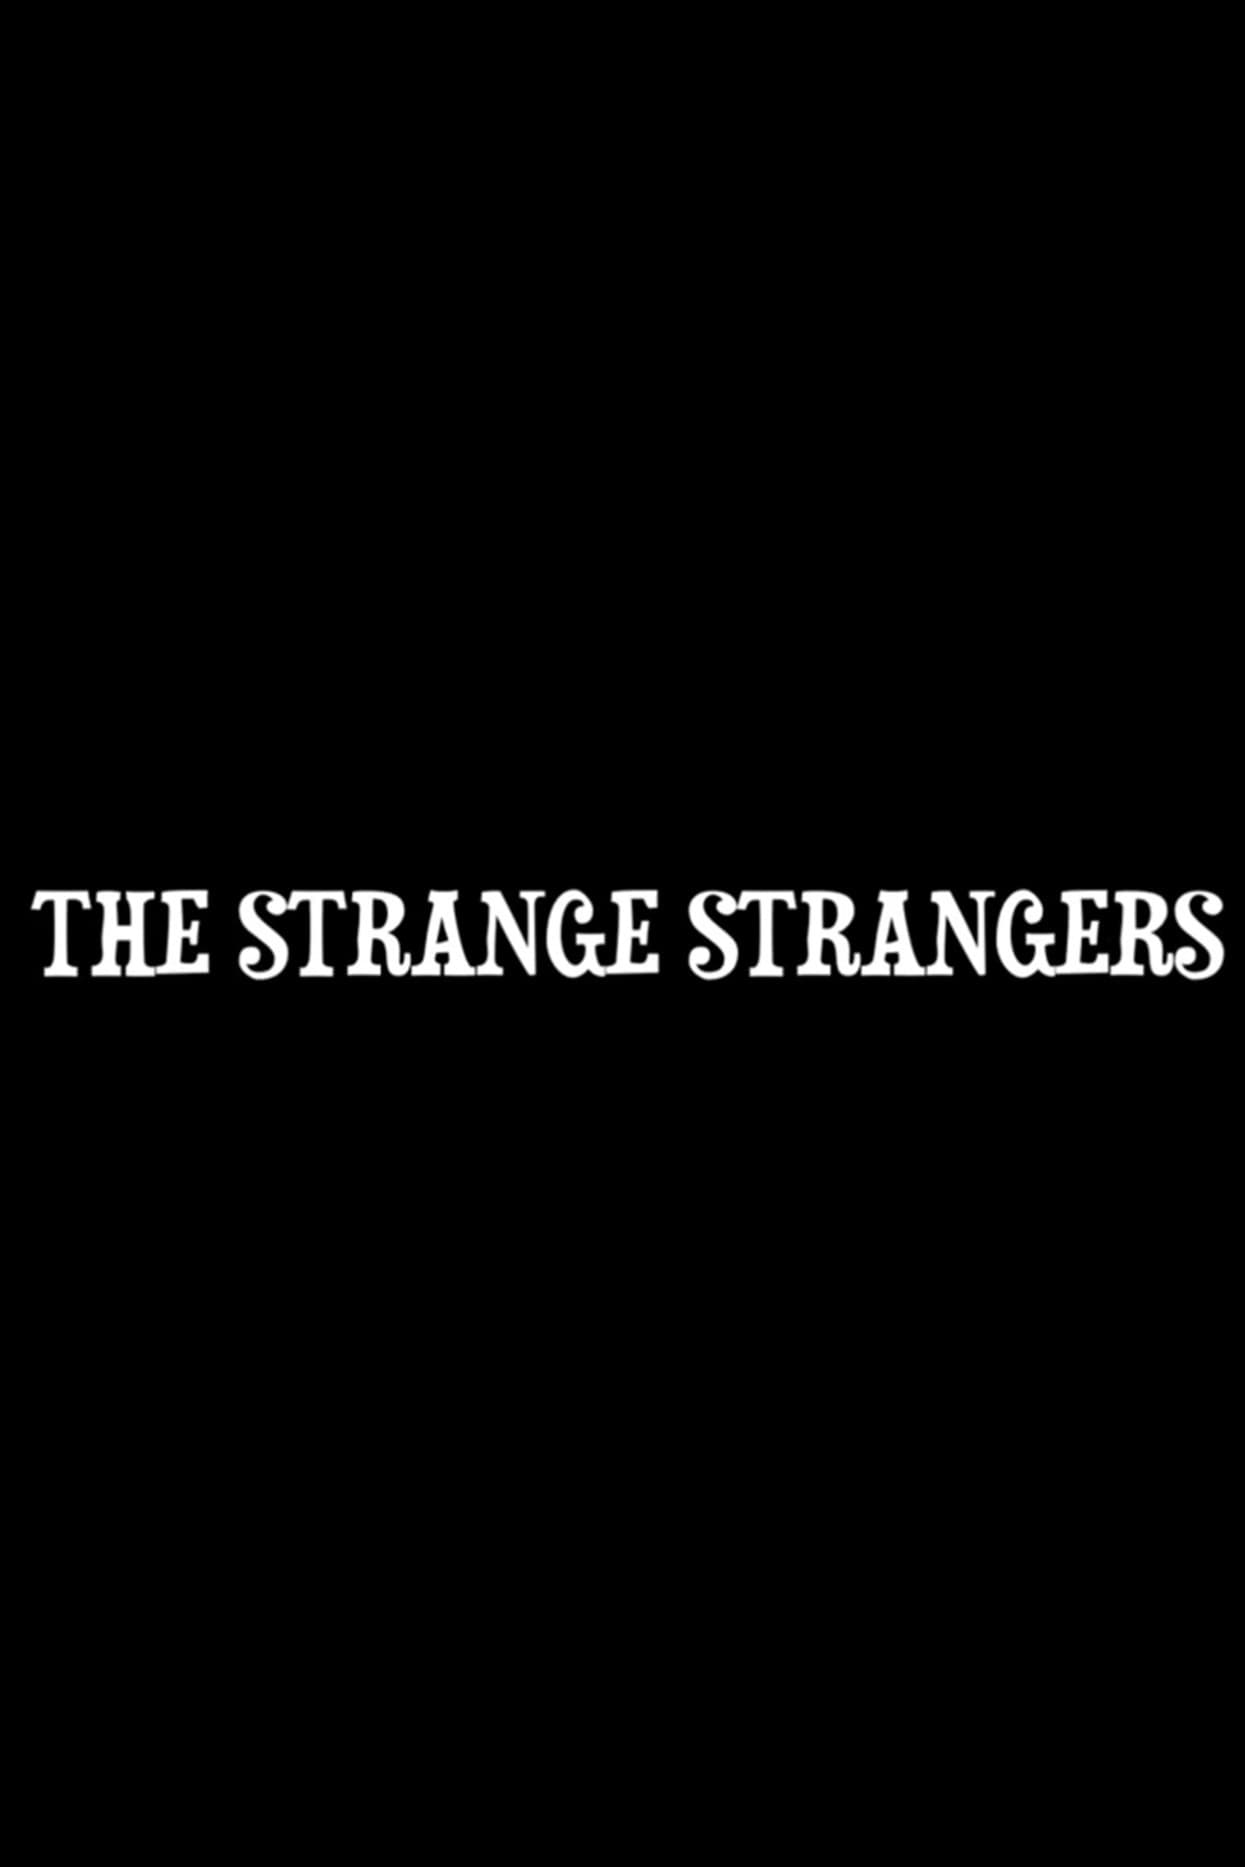 The Strange Strangers